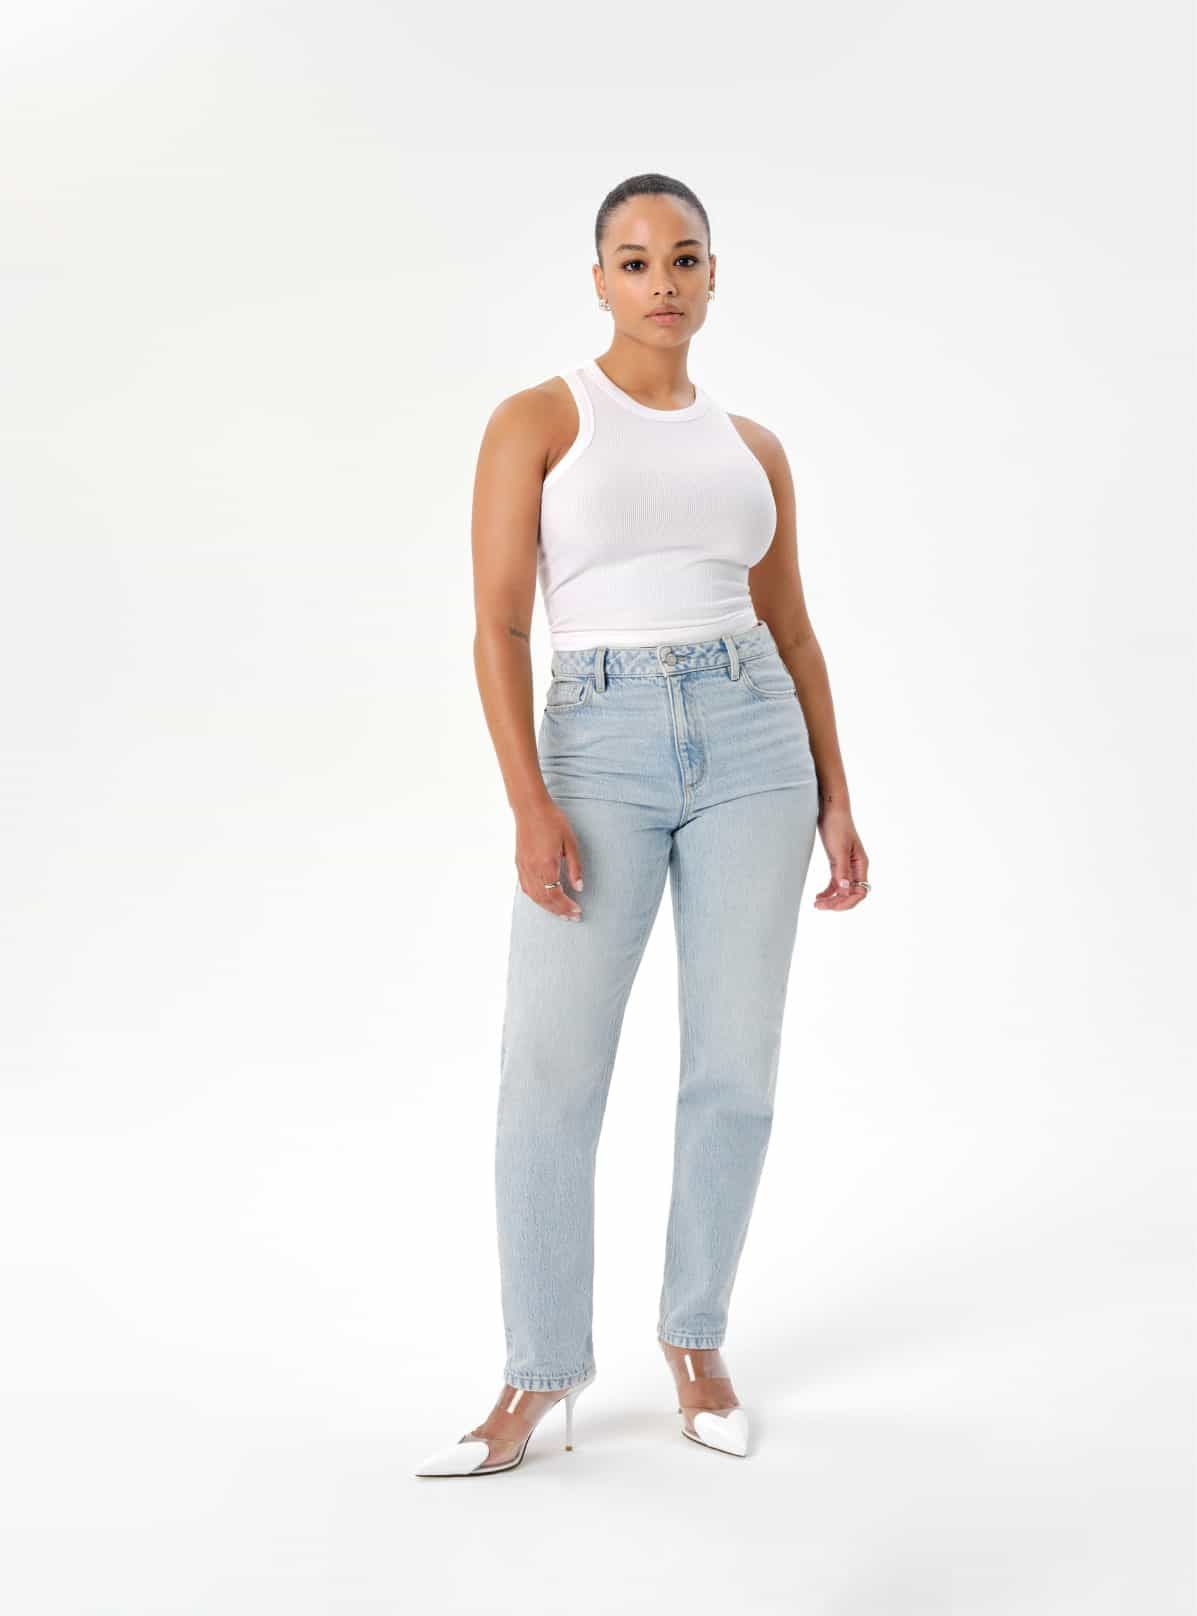 Une mannequin porte un jean « mom » bleu pâle et une camisole sport blanche.